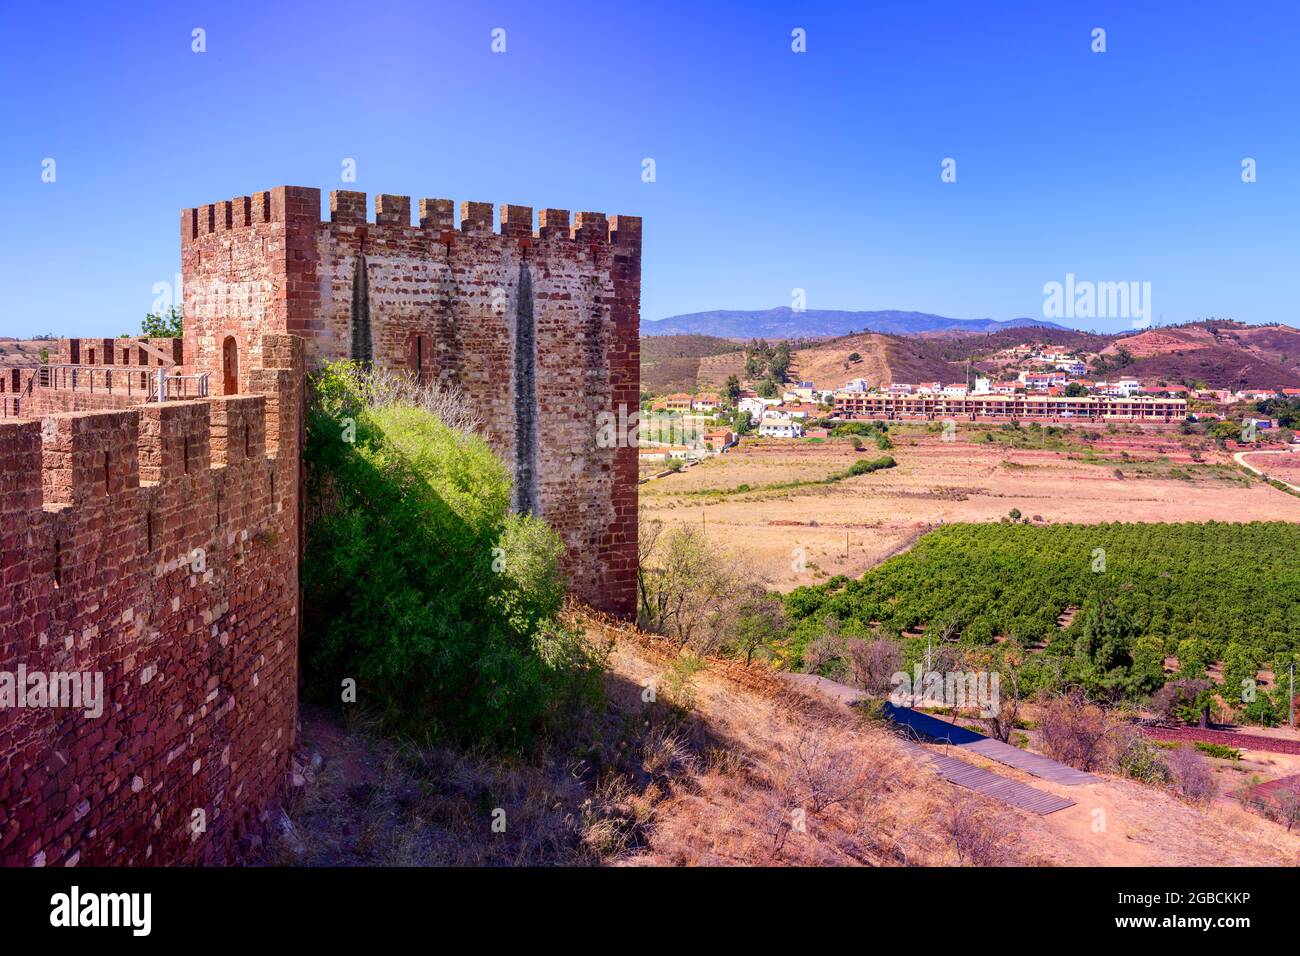 Torre quadrata e merlature del castello di Silves adagiato contro le colline circostanti, campagna e cielo blu. Silves Algarve Portogallo Foto Stock